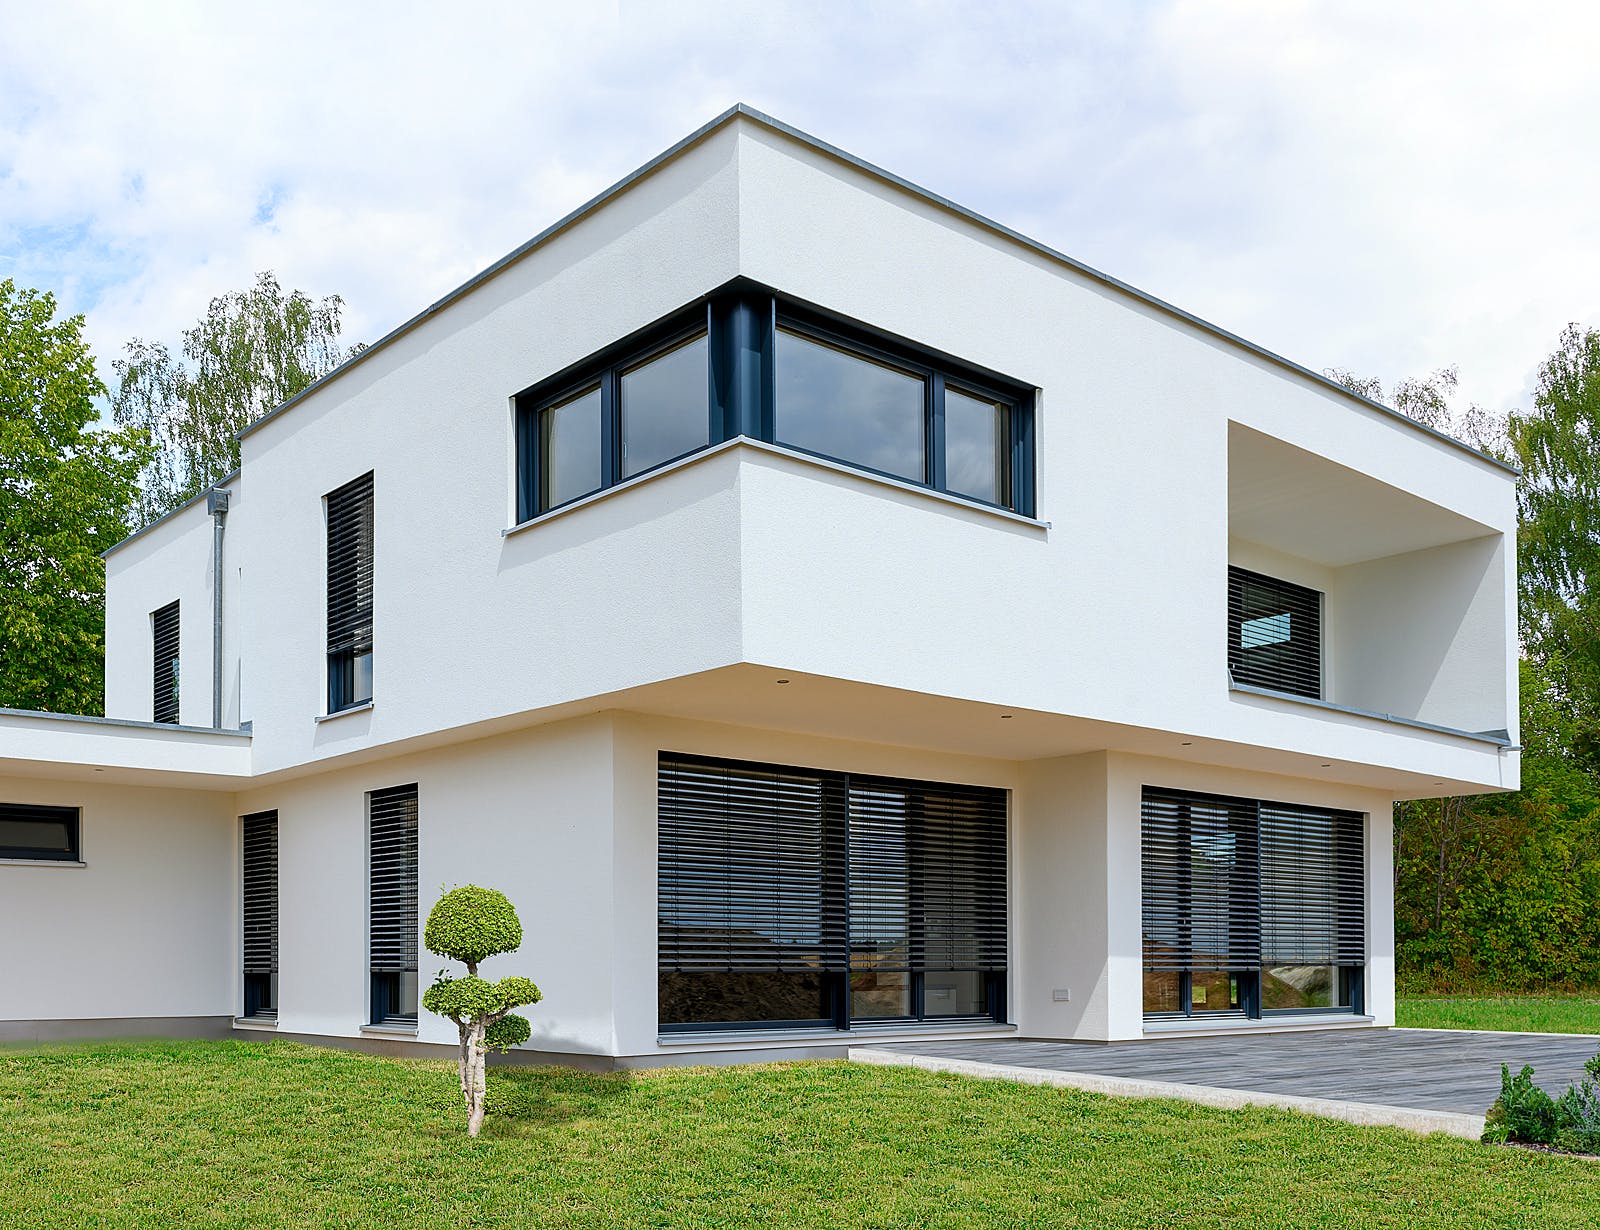 Fertighaus Einfamilienhaus mit Keller & Garage von Ziegler Haus Schlüsselfertig ab 450000€, Cubushaus Außenansicht 1